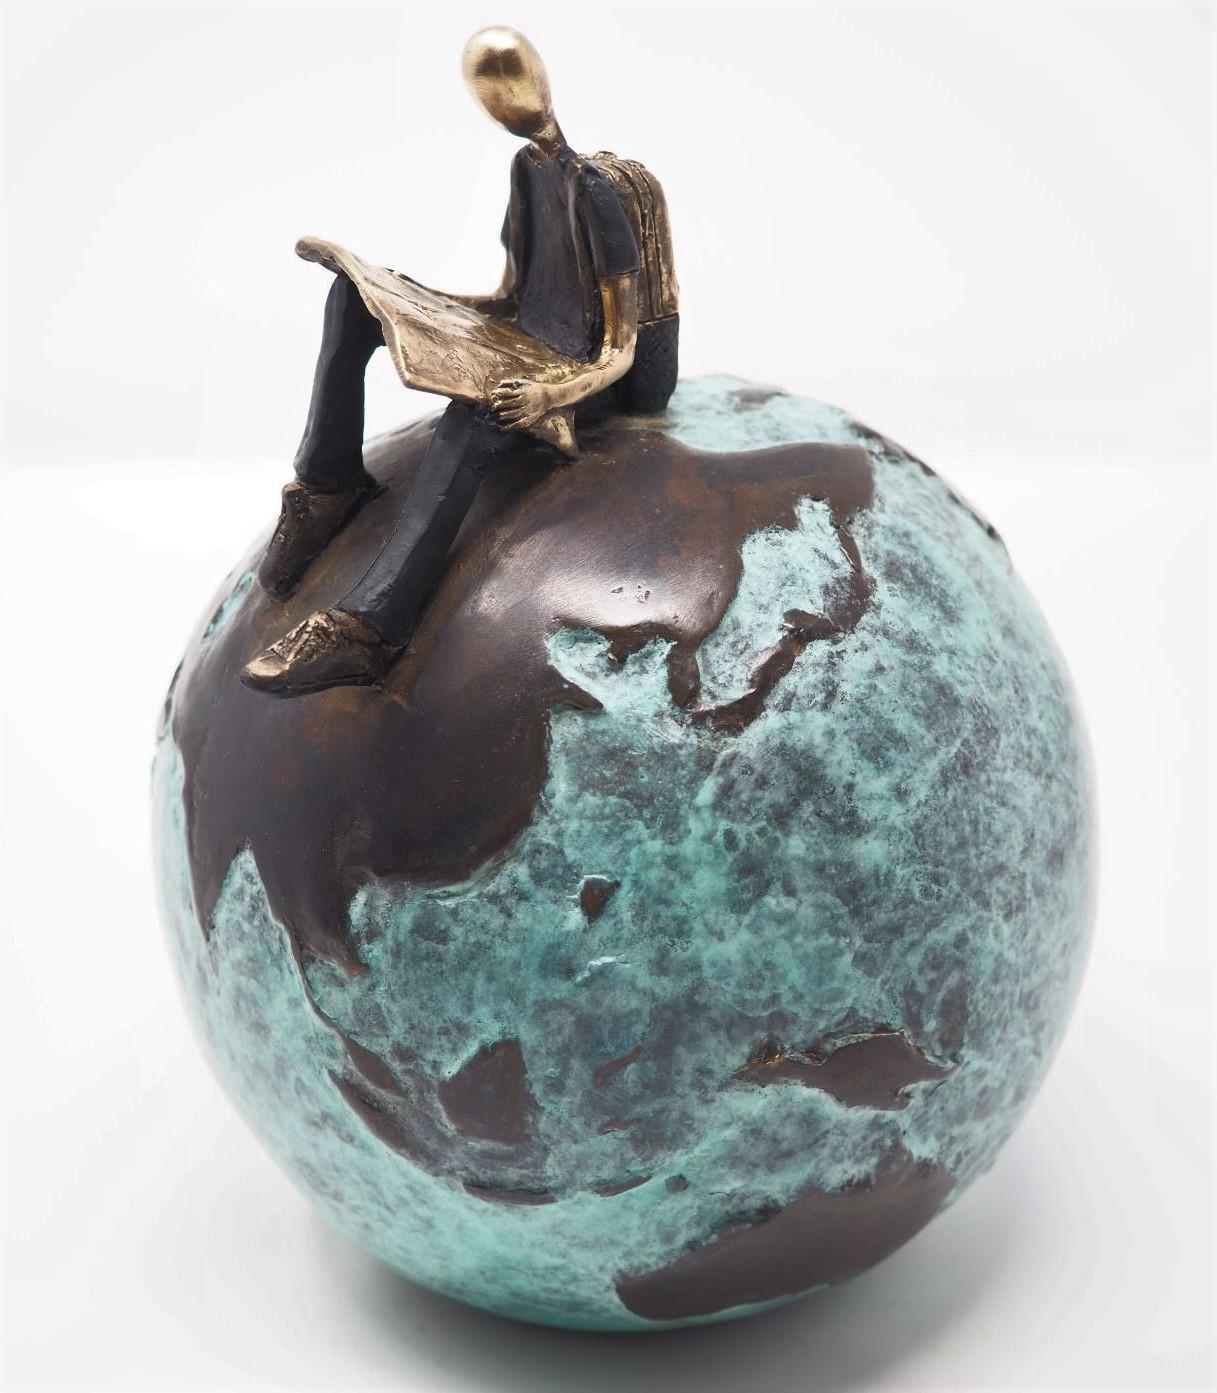 Mireia Serra Figurative Sculpture - "Unknown Land" contemporary figurative bronze table sculpture adventure courage 